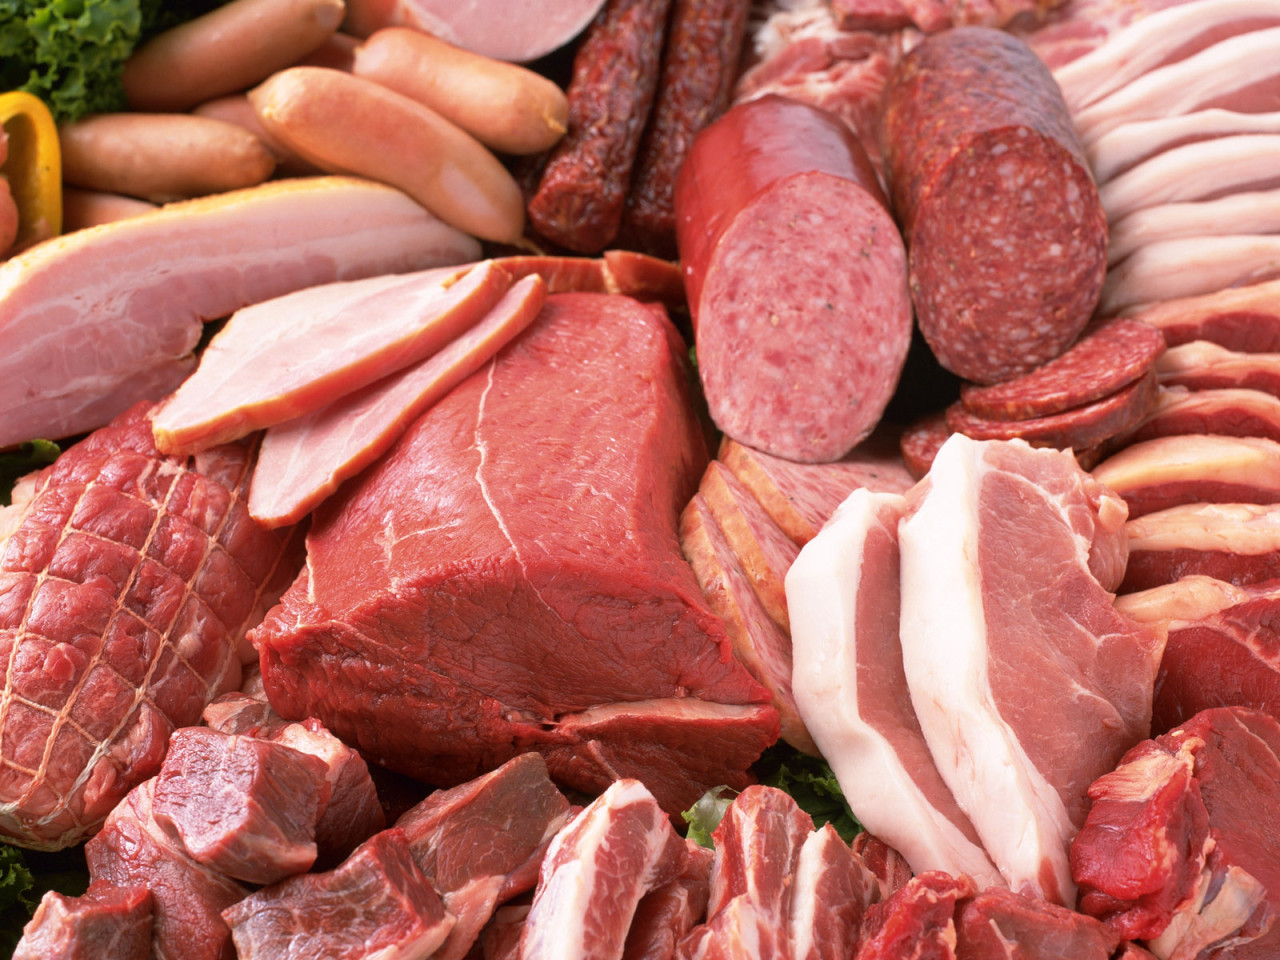 Cancro: la carne potrebbe favorire l'insorgere di alcune forme di tumori